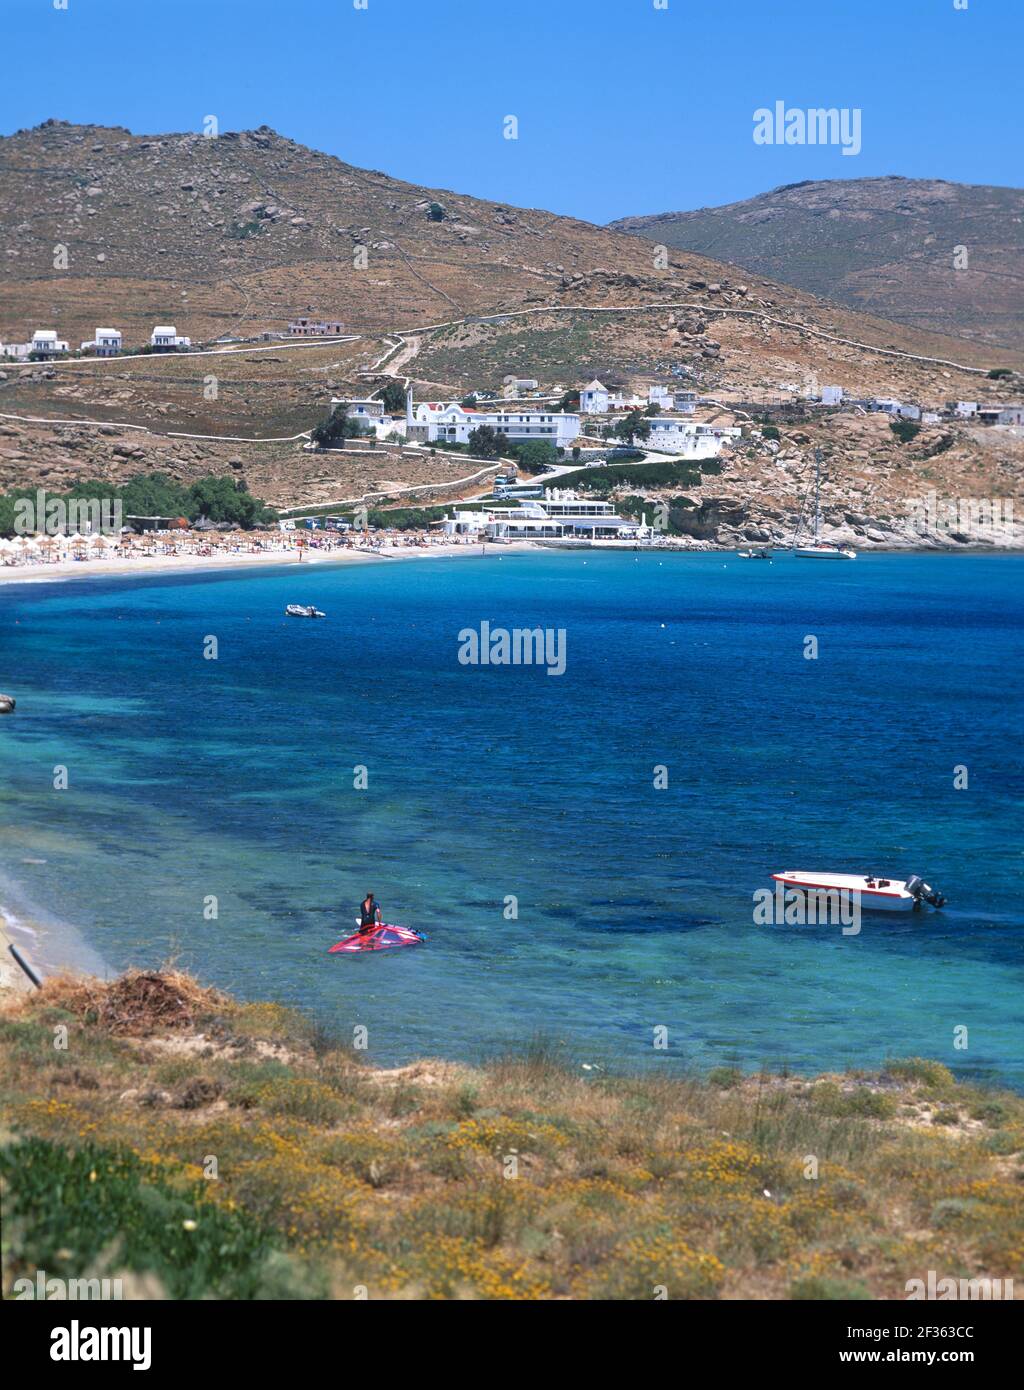 Greece, Cyclades Islands, Mykonos, Stelia Beach, popular for windsurfing. Stock Photo